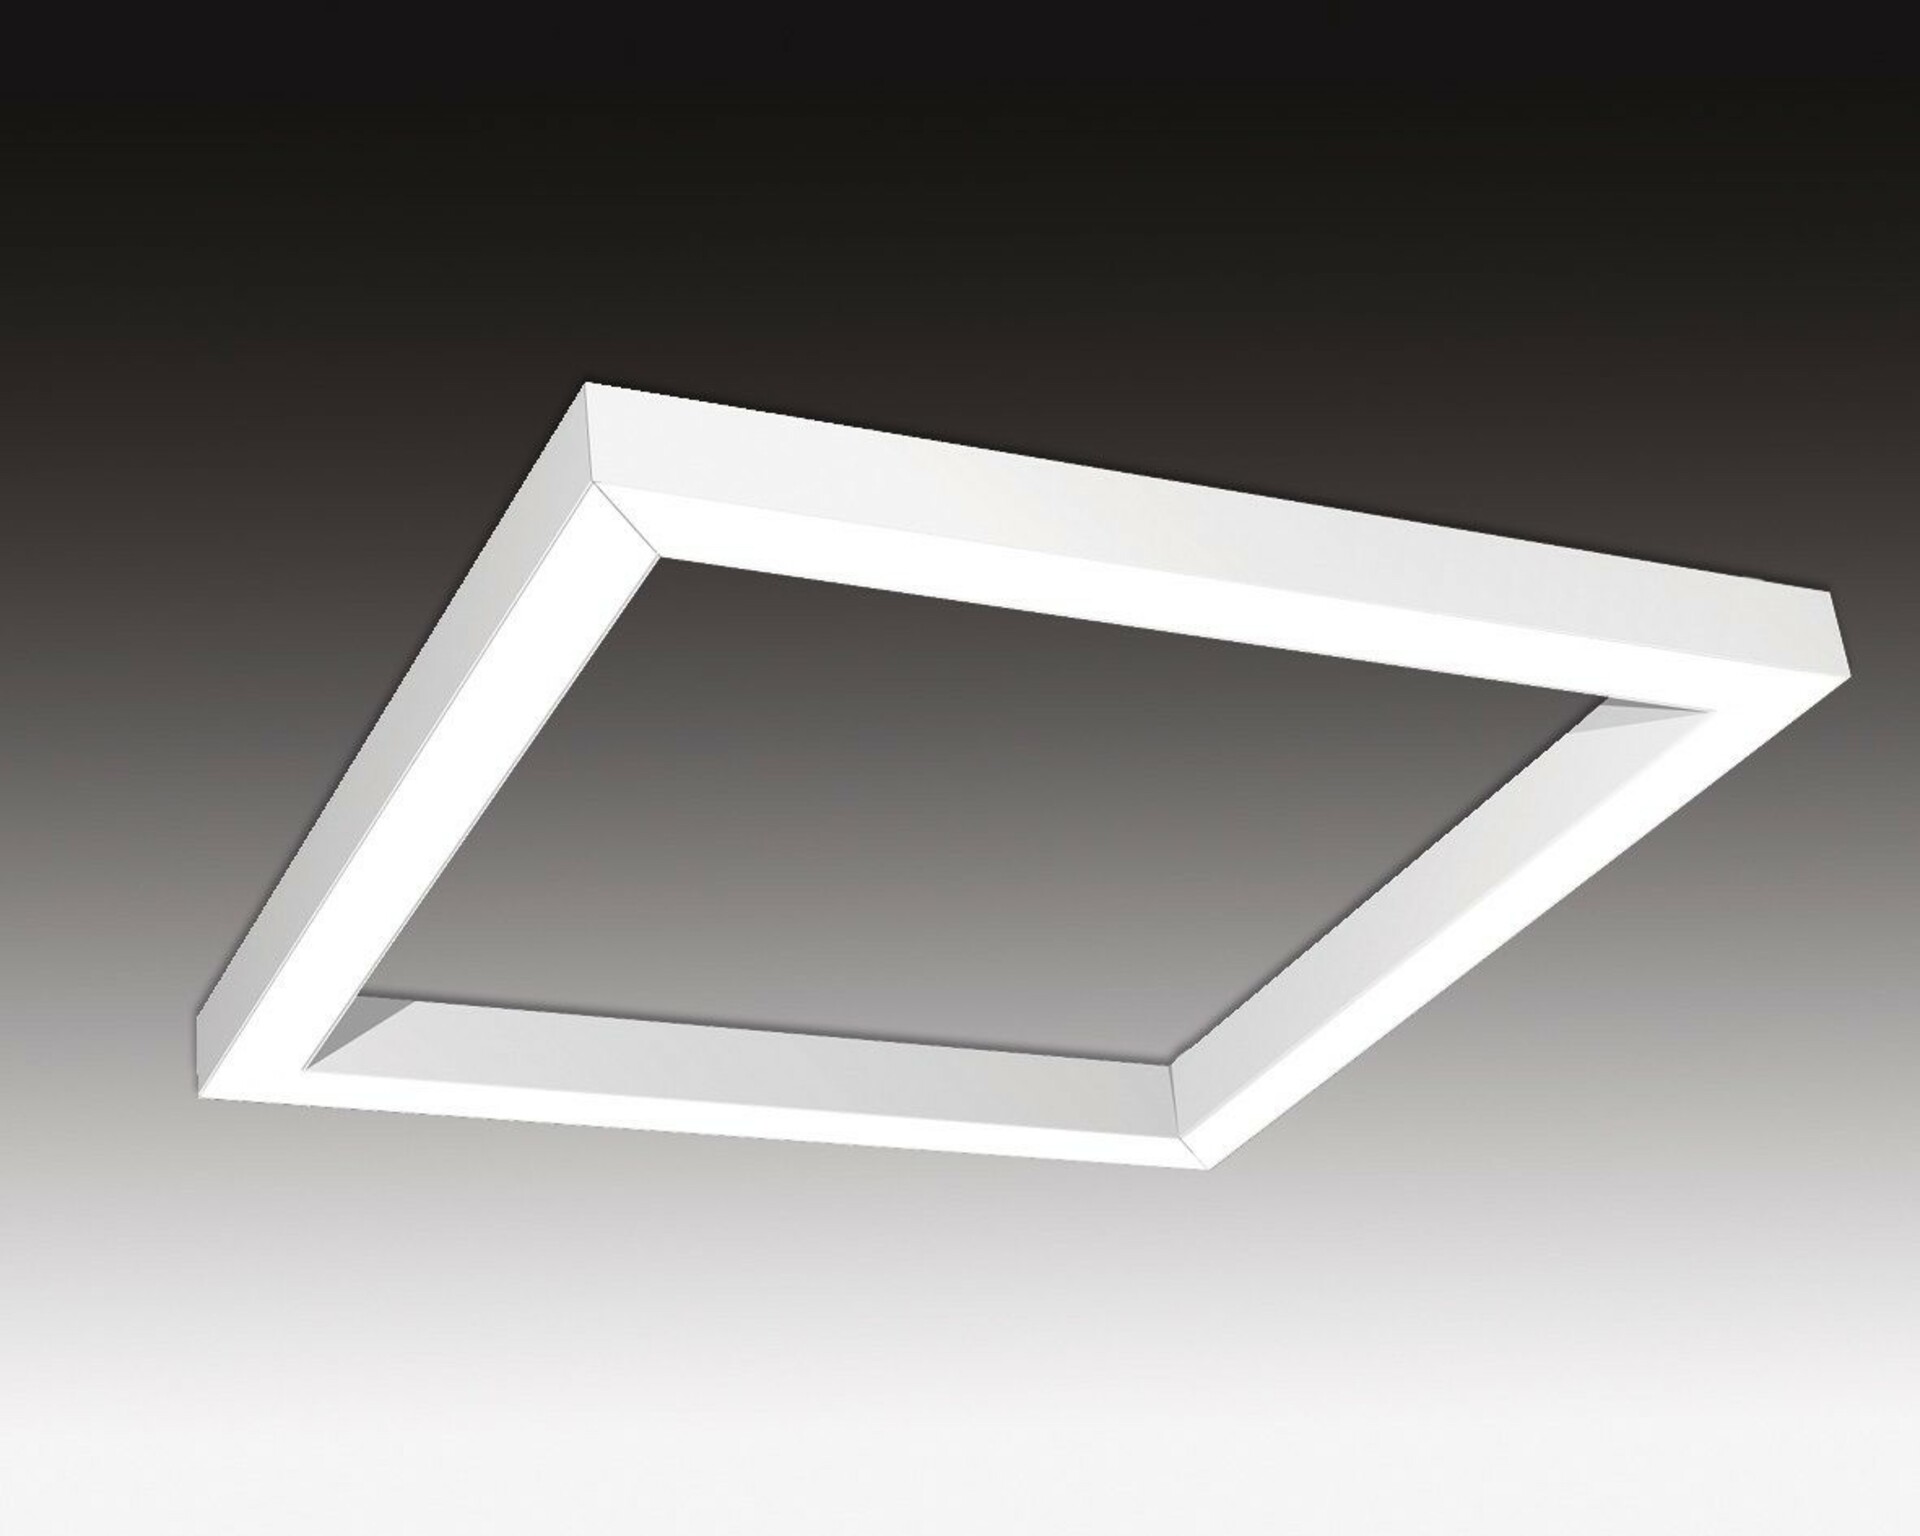 SEC Závěsné LED svítidlo nepřímé osvětlení WEGA-FRAME2-AA-DIM-DALI, 50 W, bílá, 886 x 886 x 50 mm, 3000 K, 6540 lm 321-B-003-01-01-SP